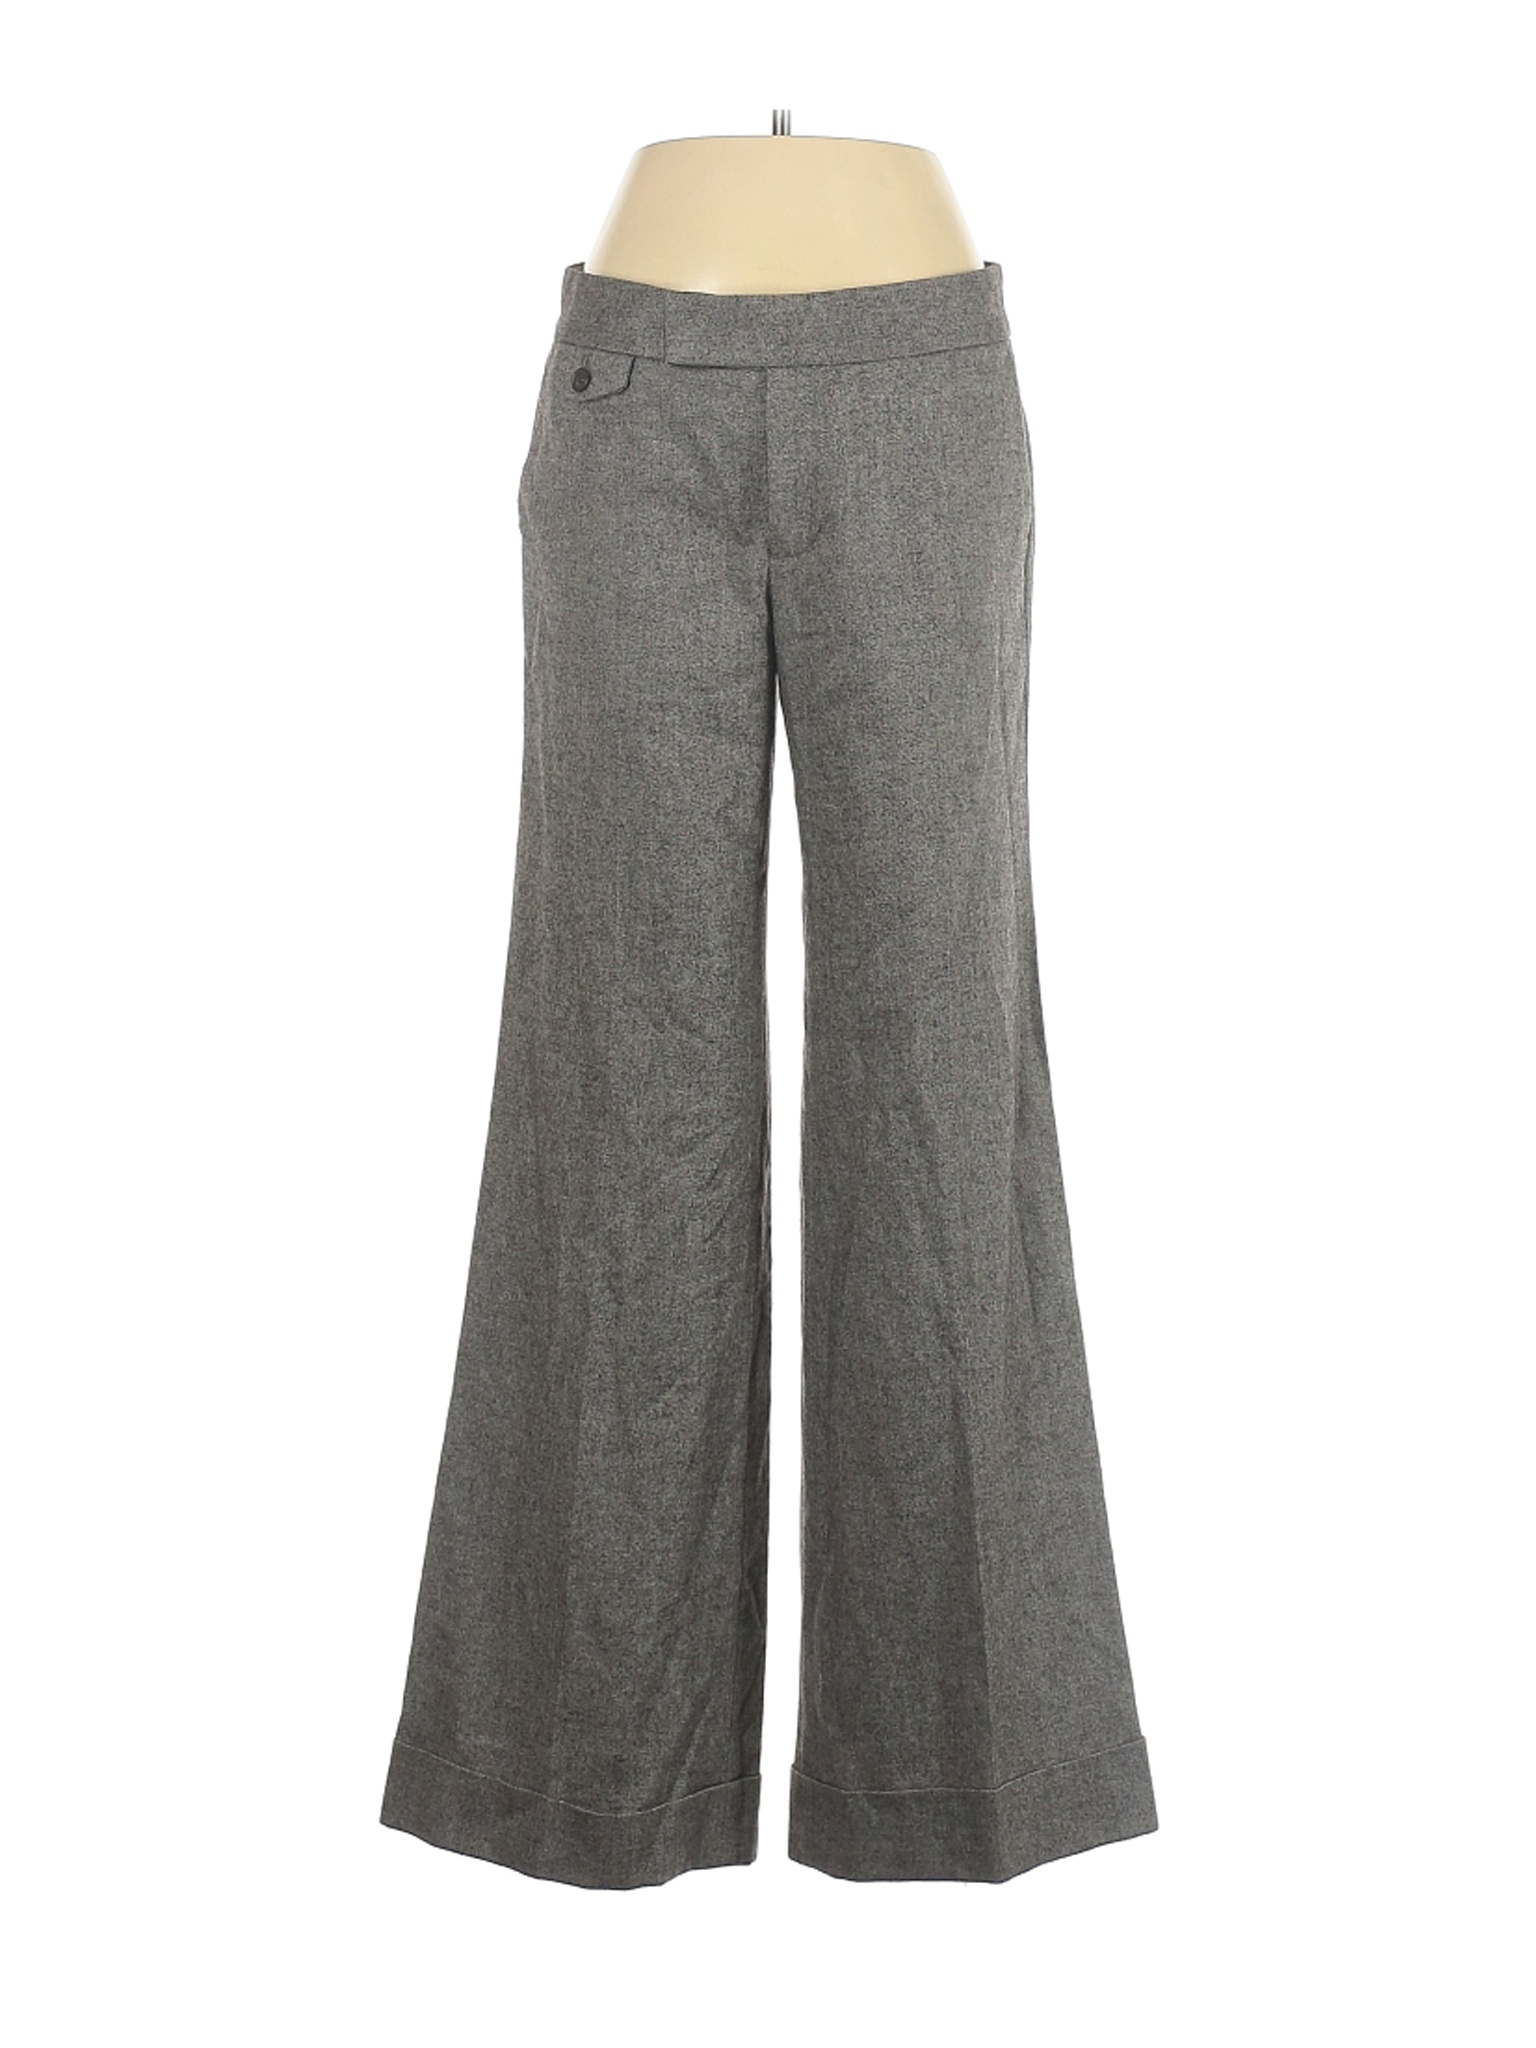 Gap Women Gray Dress Pants 4 | eBay